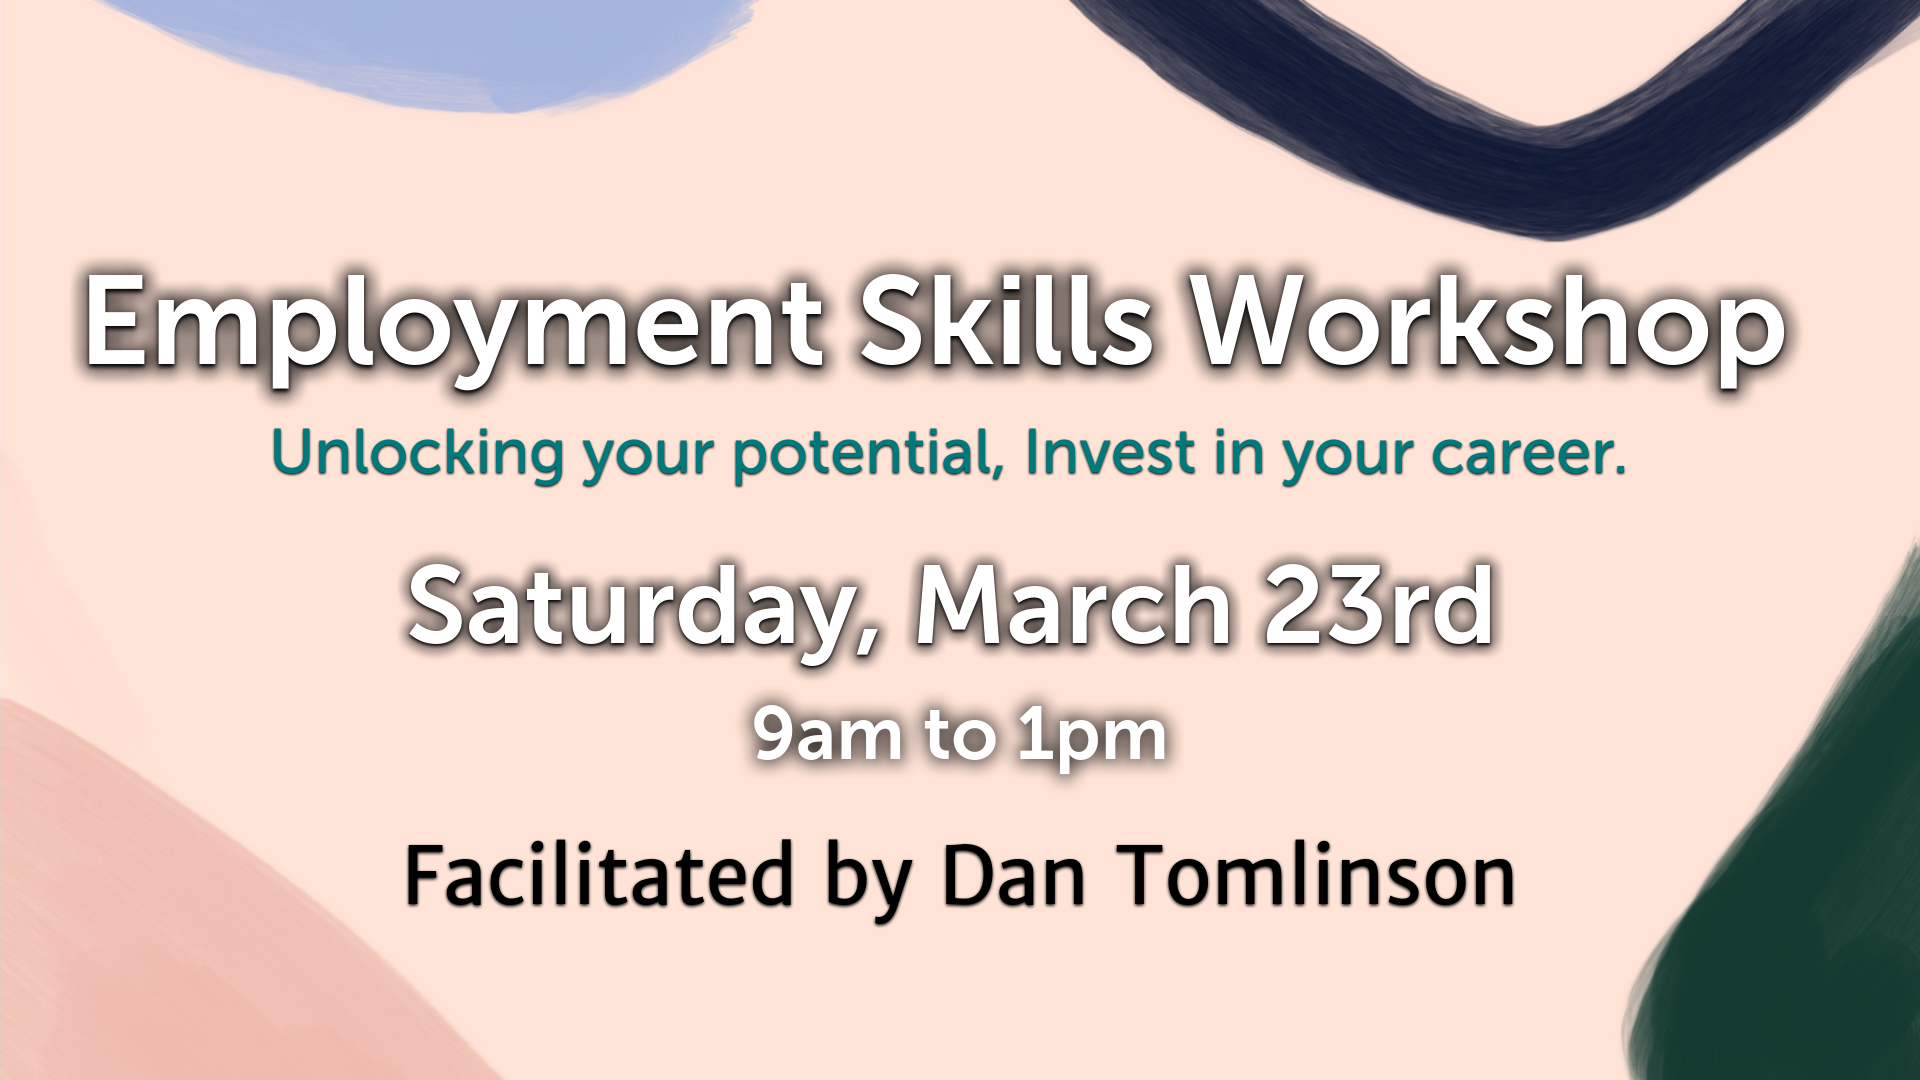 Employment Skills Workshop